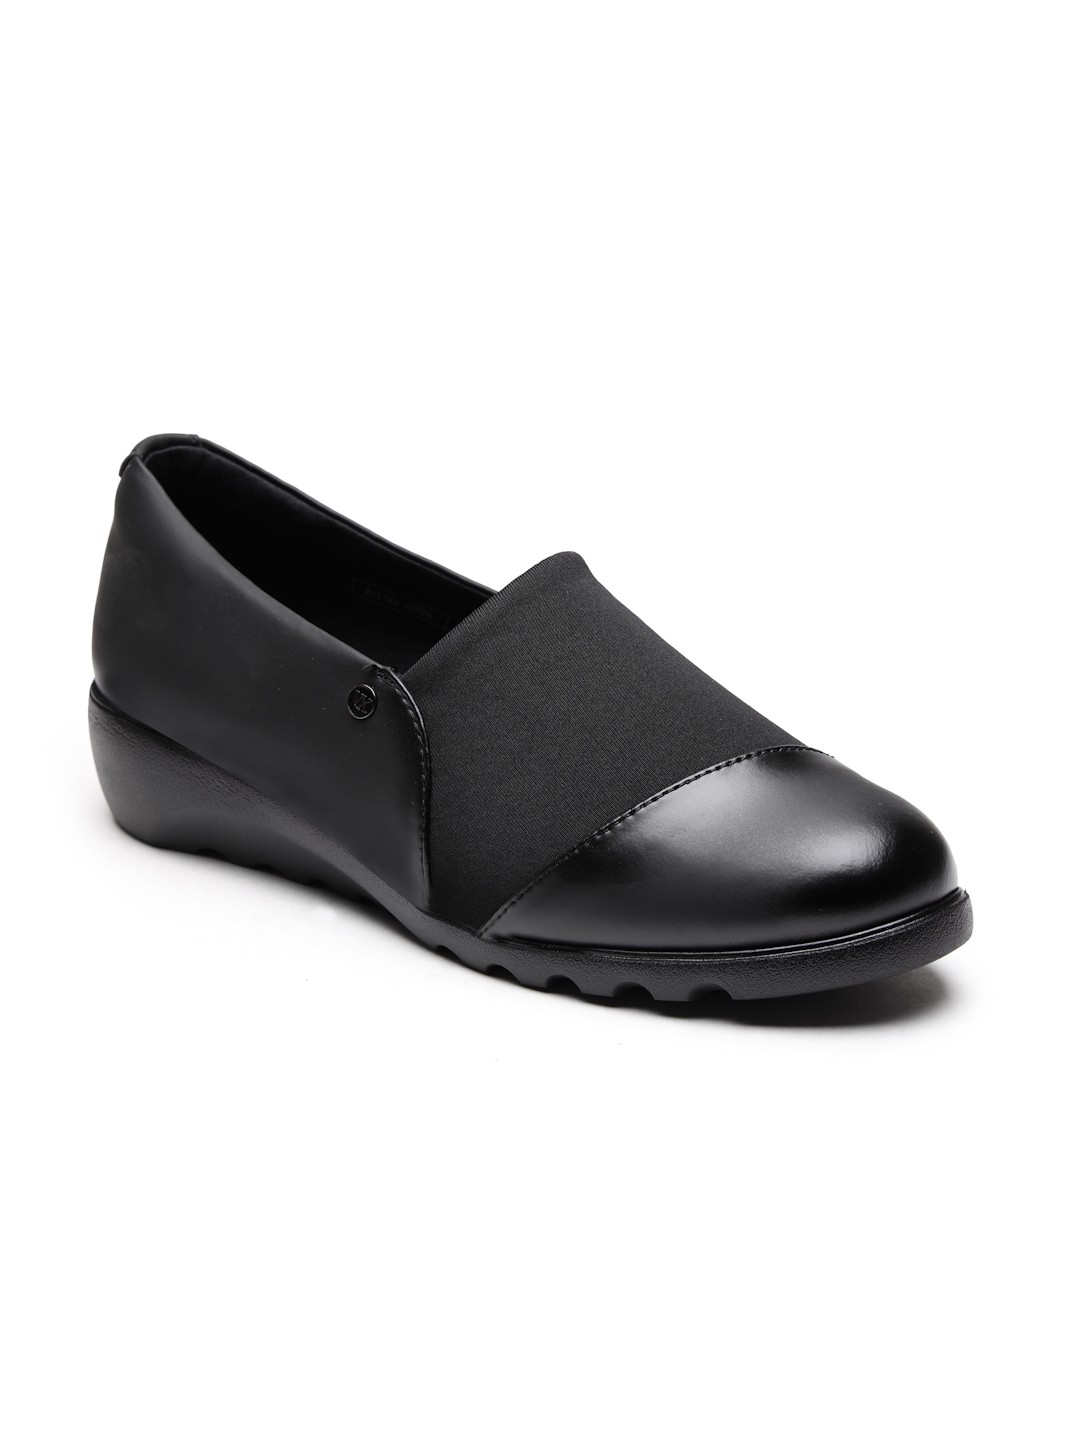 Buy Von Wellx Germany Comfort Women's Black Casual Shoes Ayla Online in Vadodara